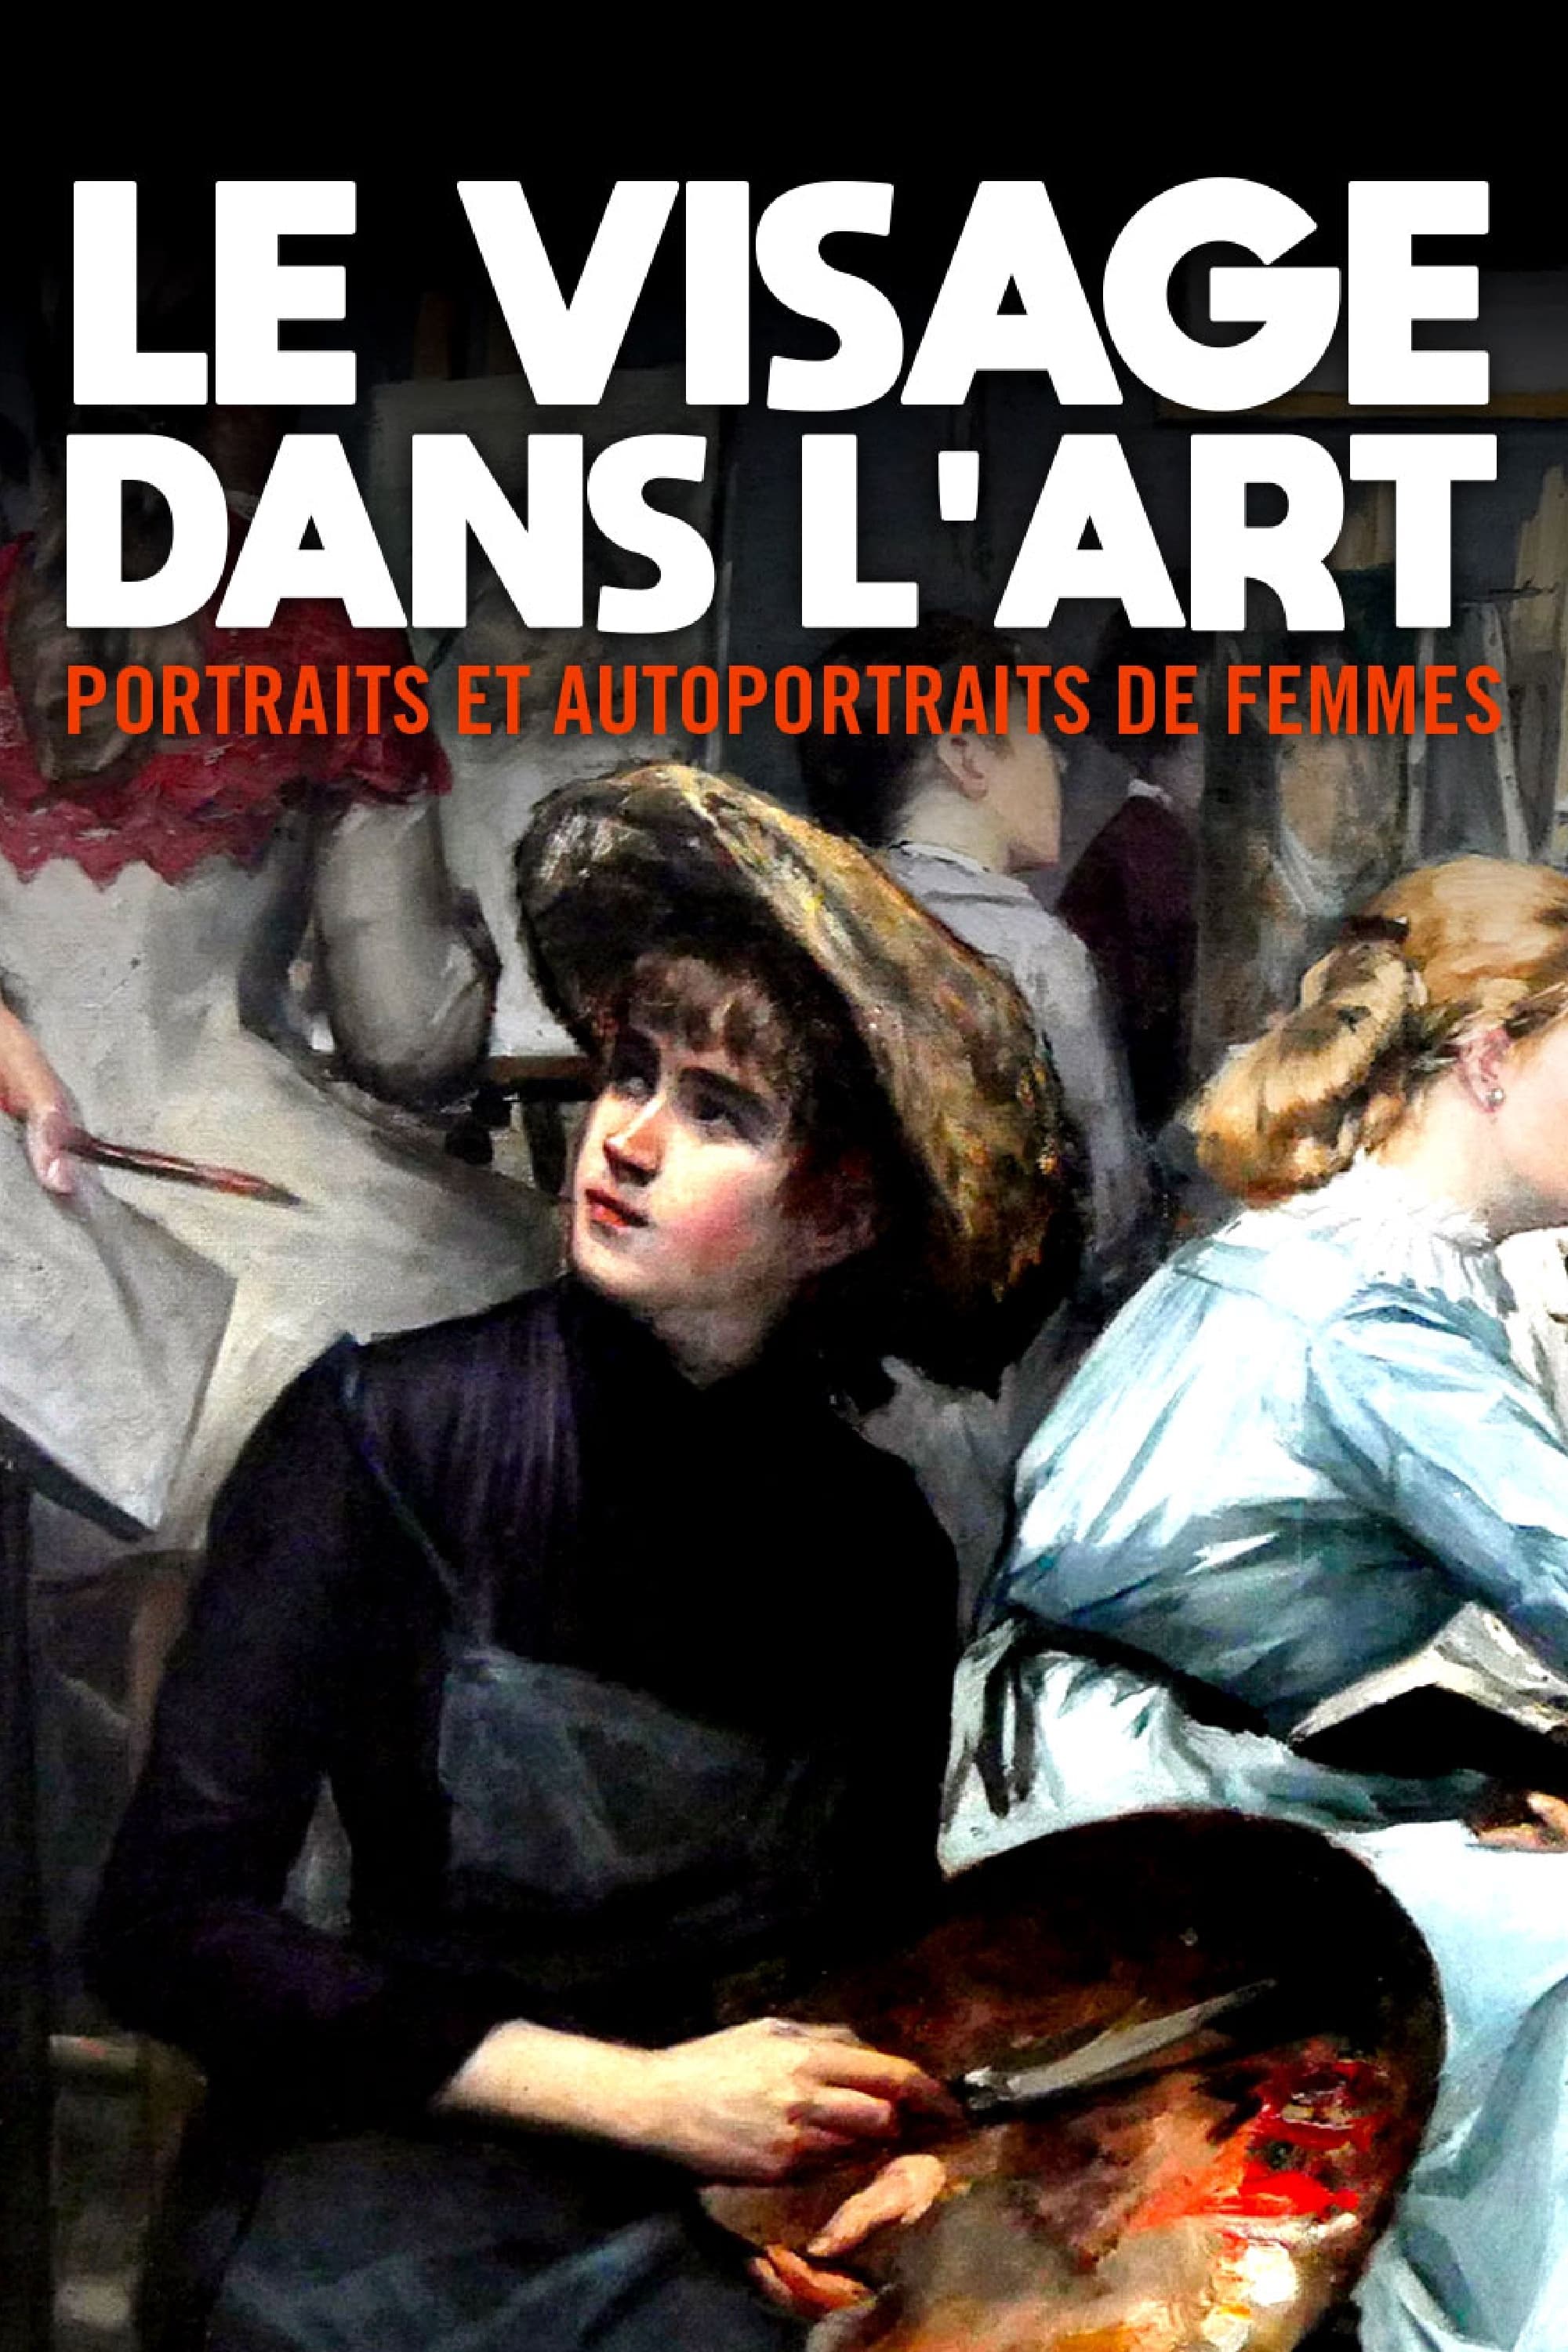 Le visage dans l’art - Portraits et autoportraits de femmes